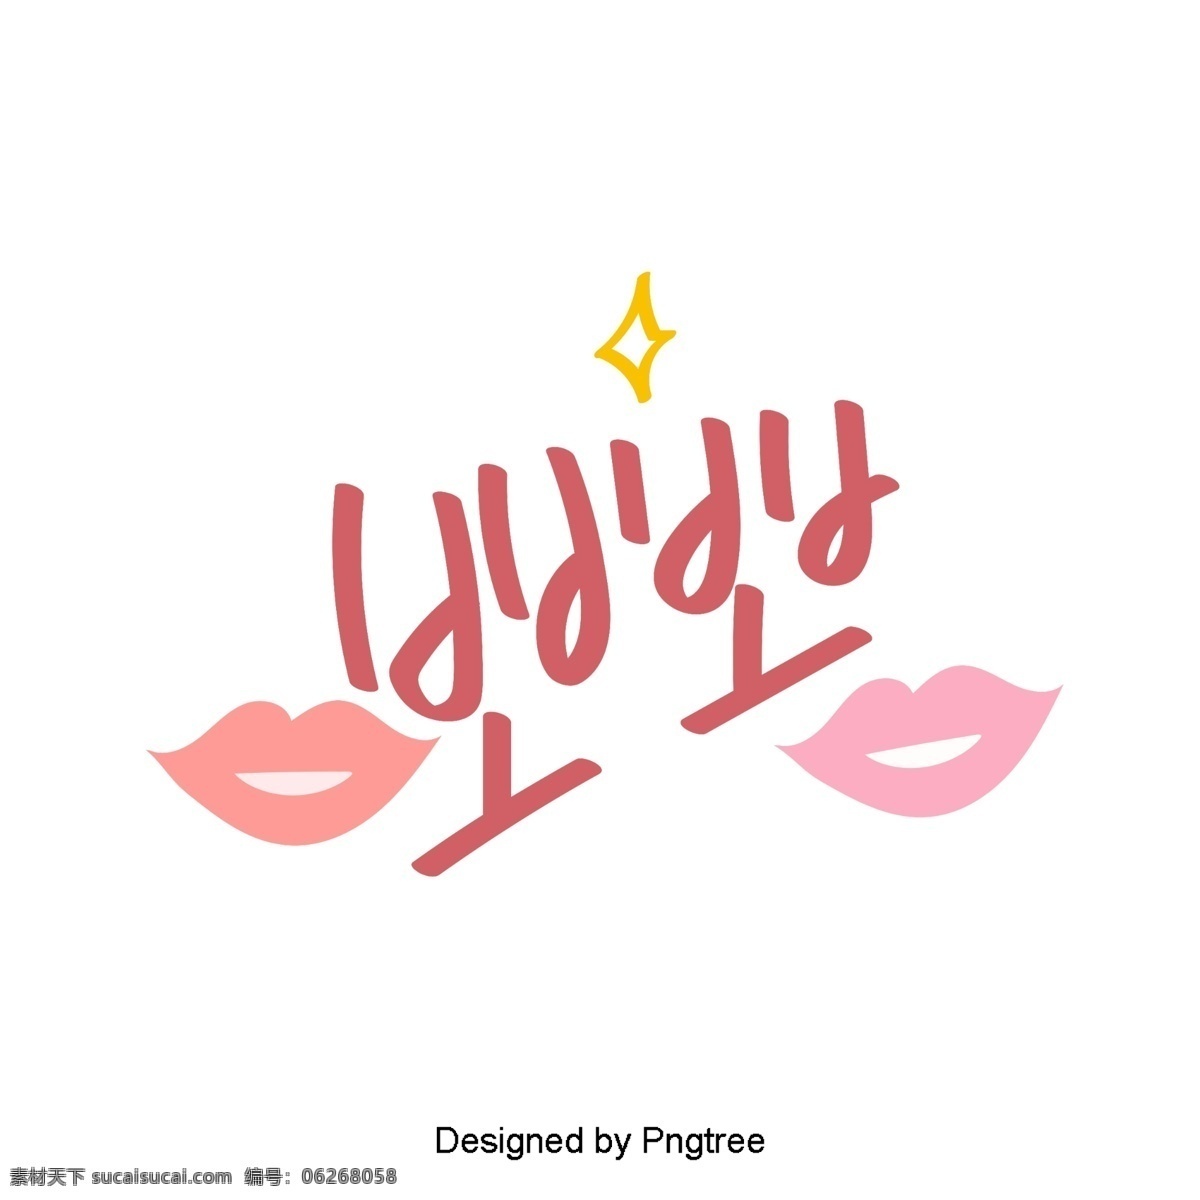 韩国 可爱 的卡 通 风格 家 每天 移动 支付 一个 词 香油卡通可爱 字体 粉红